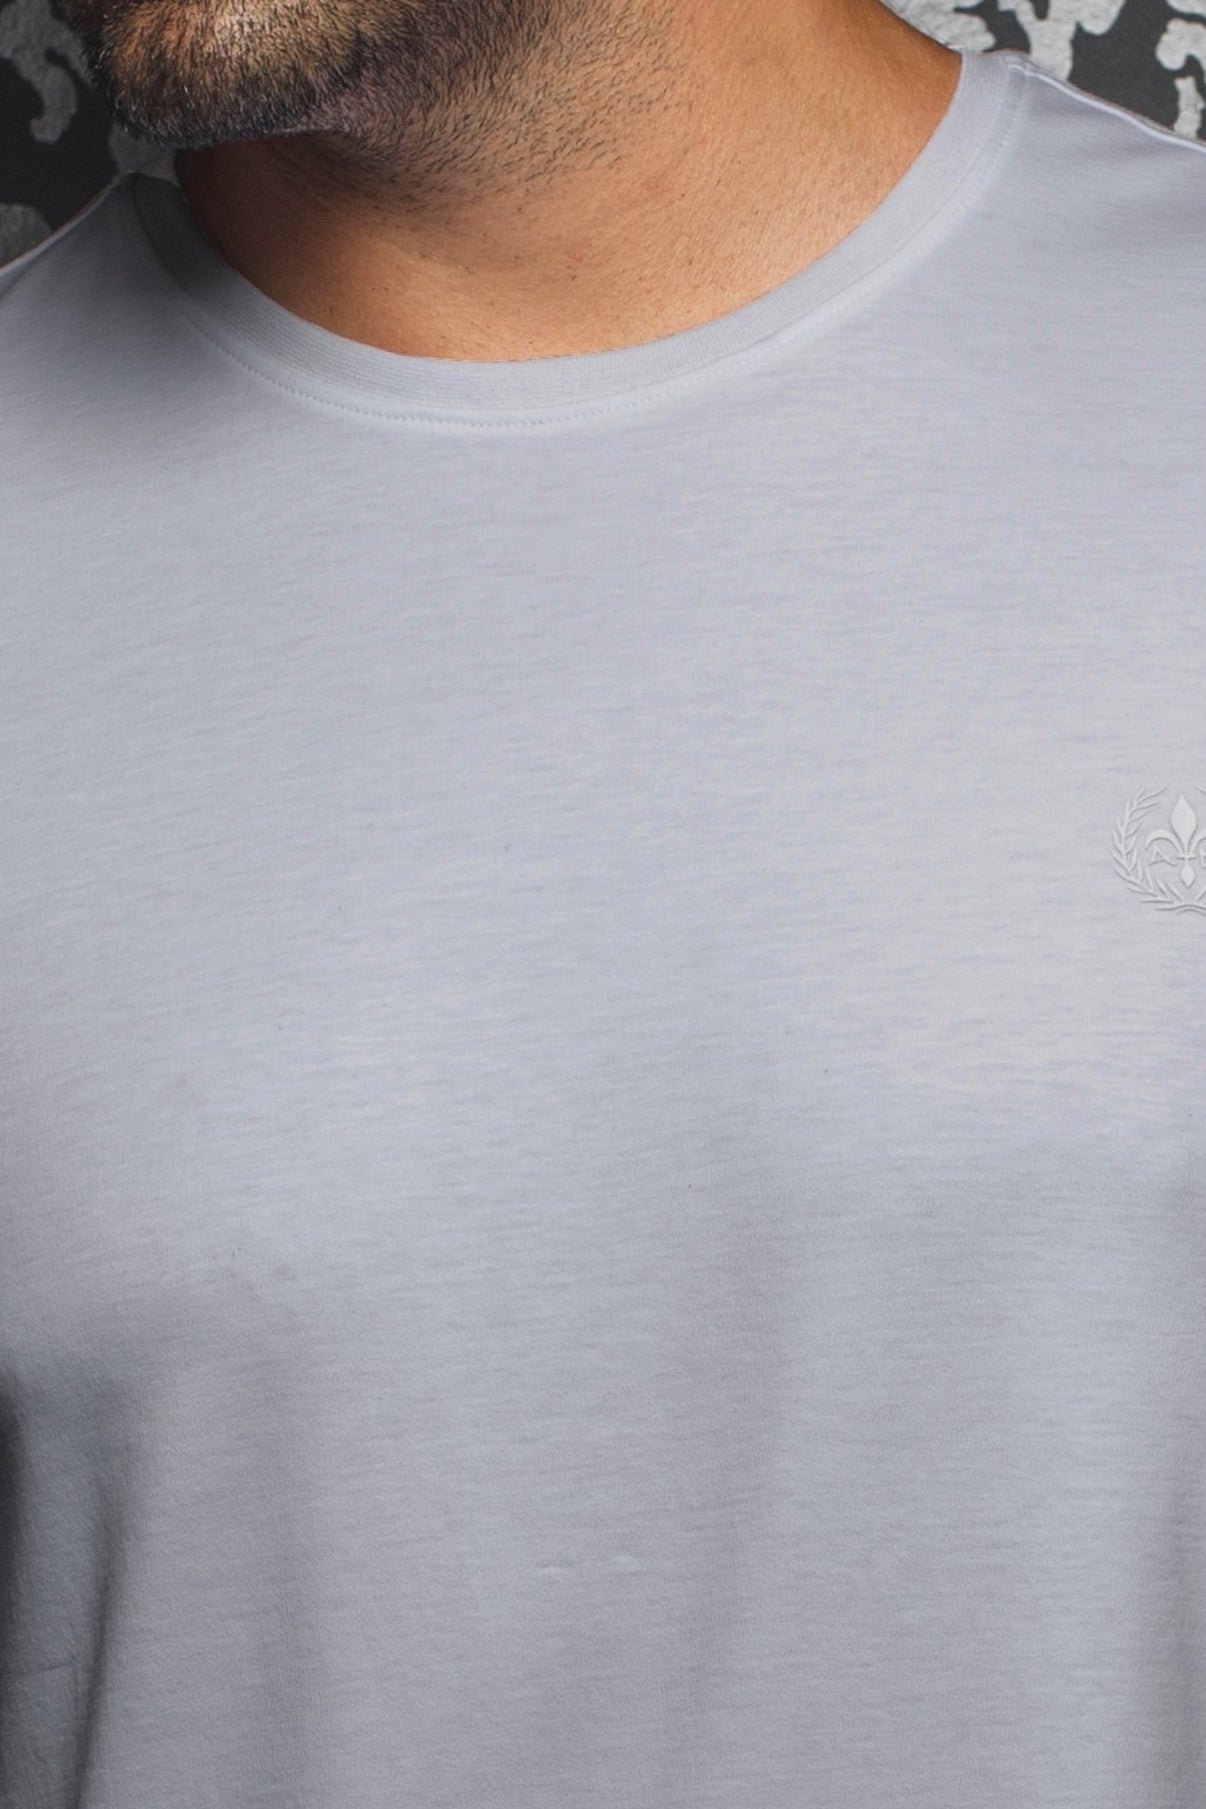 Camiseta | MICHAEL-C, gris claro - AU NOIR